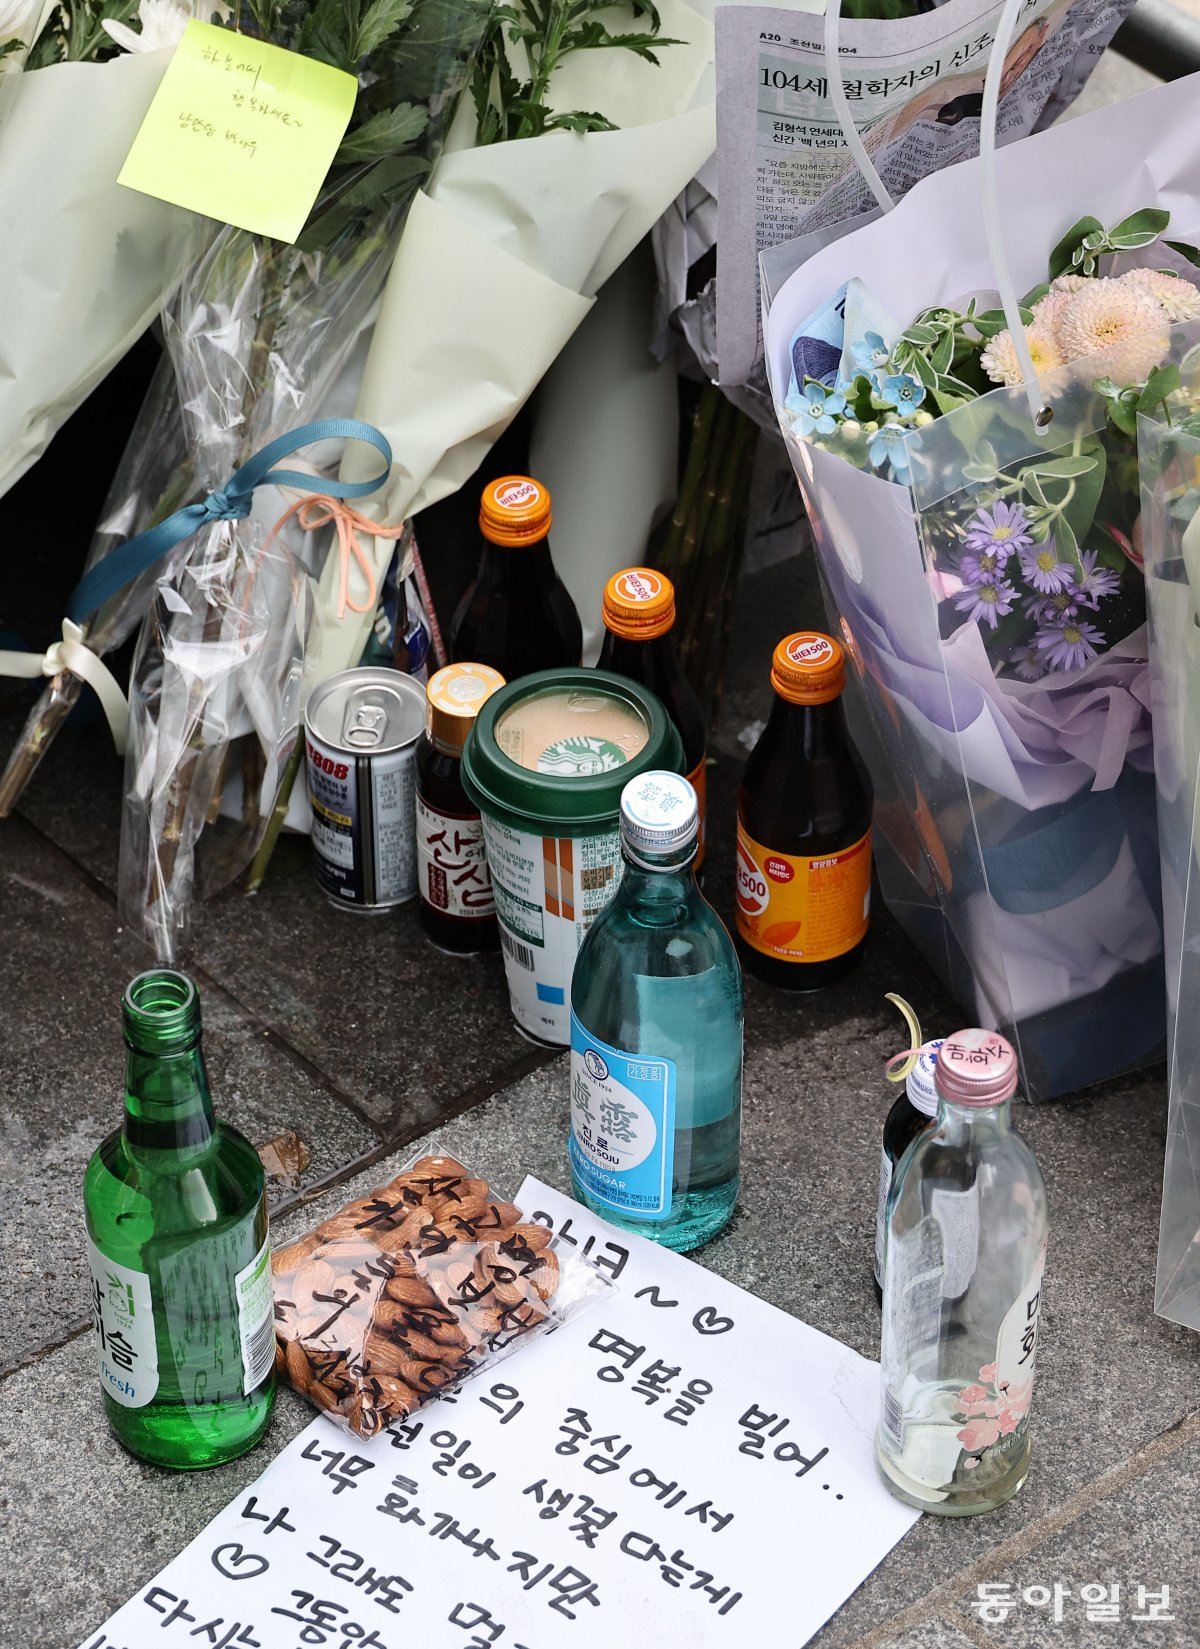 추모 메시지를 담은 메모와 음료수, 소주 등도 곳곳에 놓여 있었다. 양회성 기자 yohan@donga.com